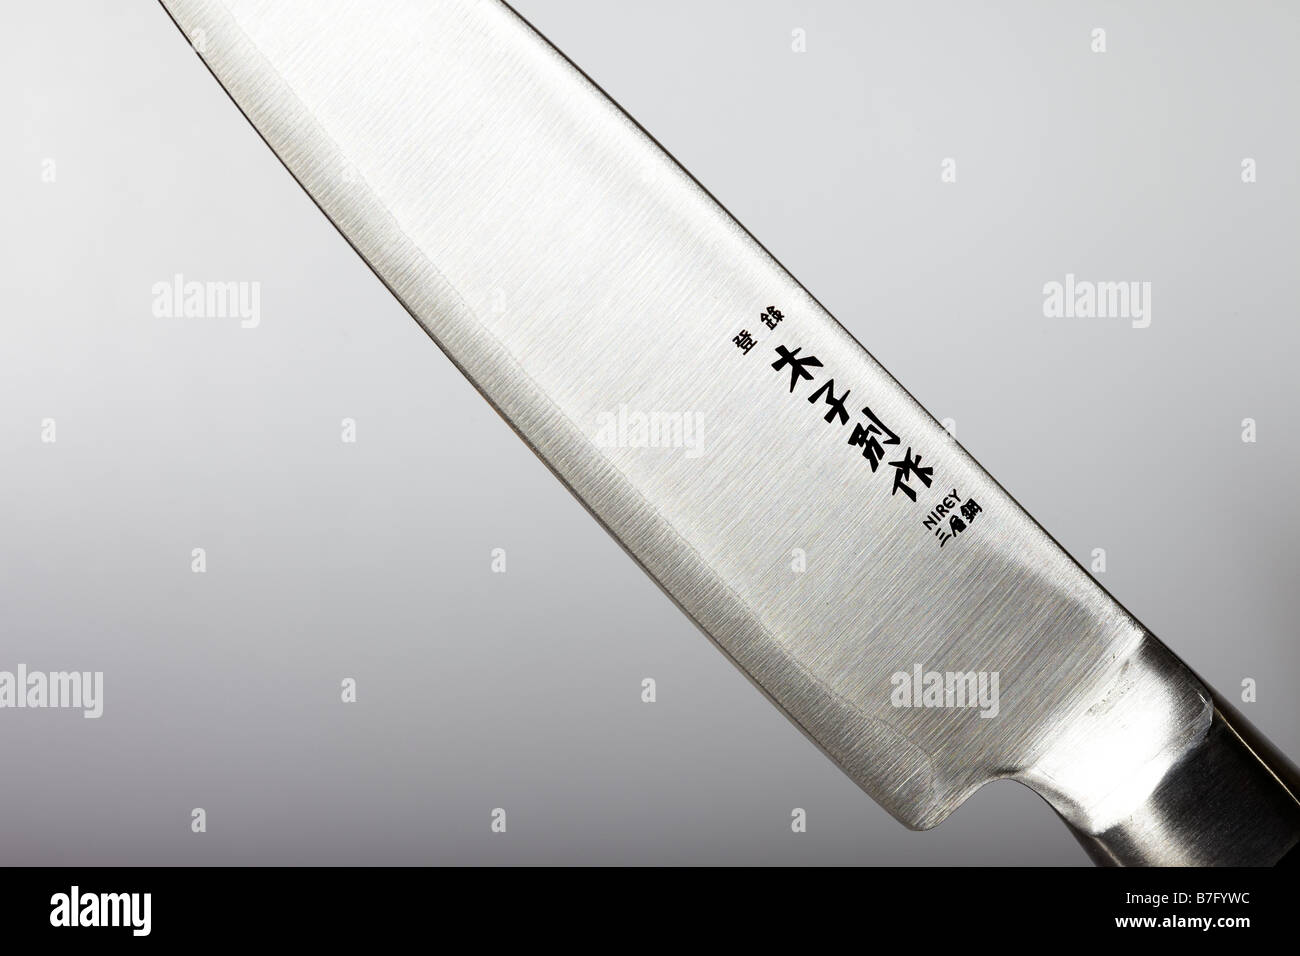 Cuchillo de cocina japonesa Foto de stock